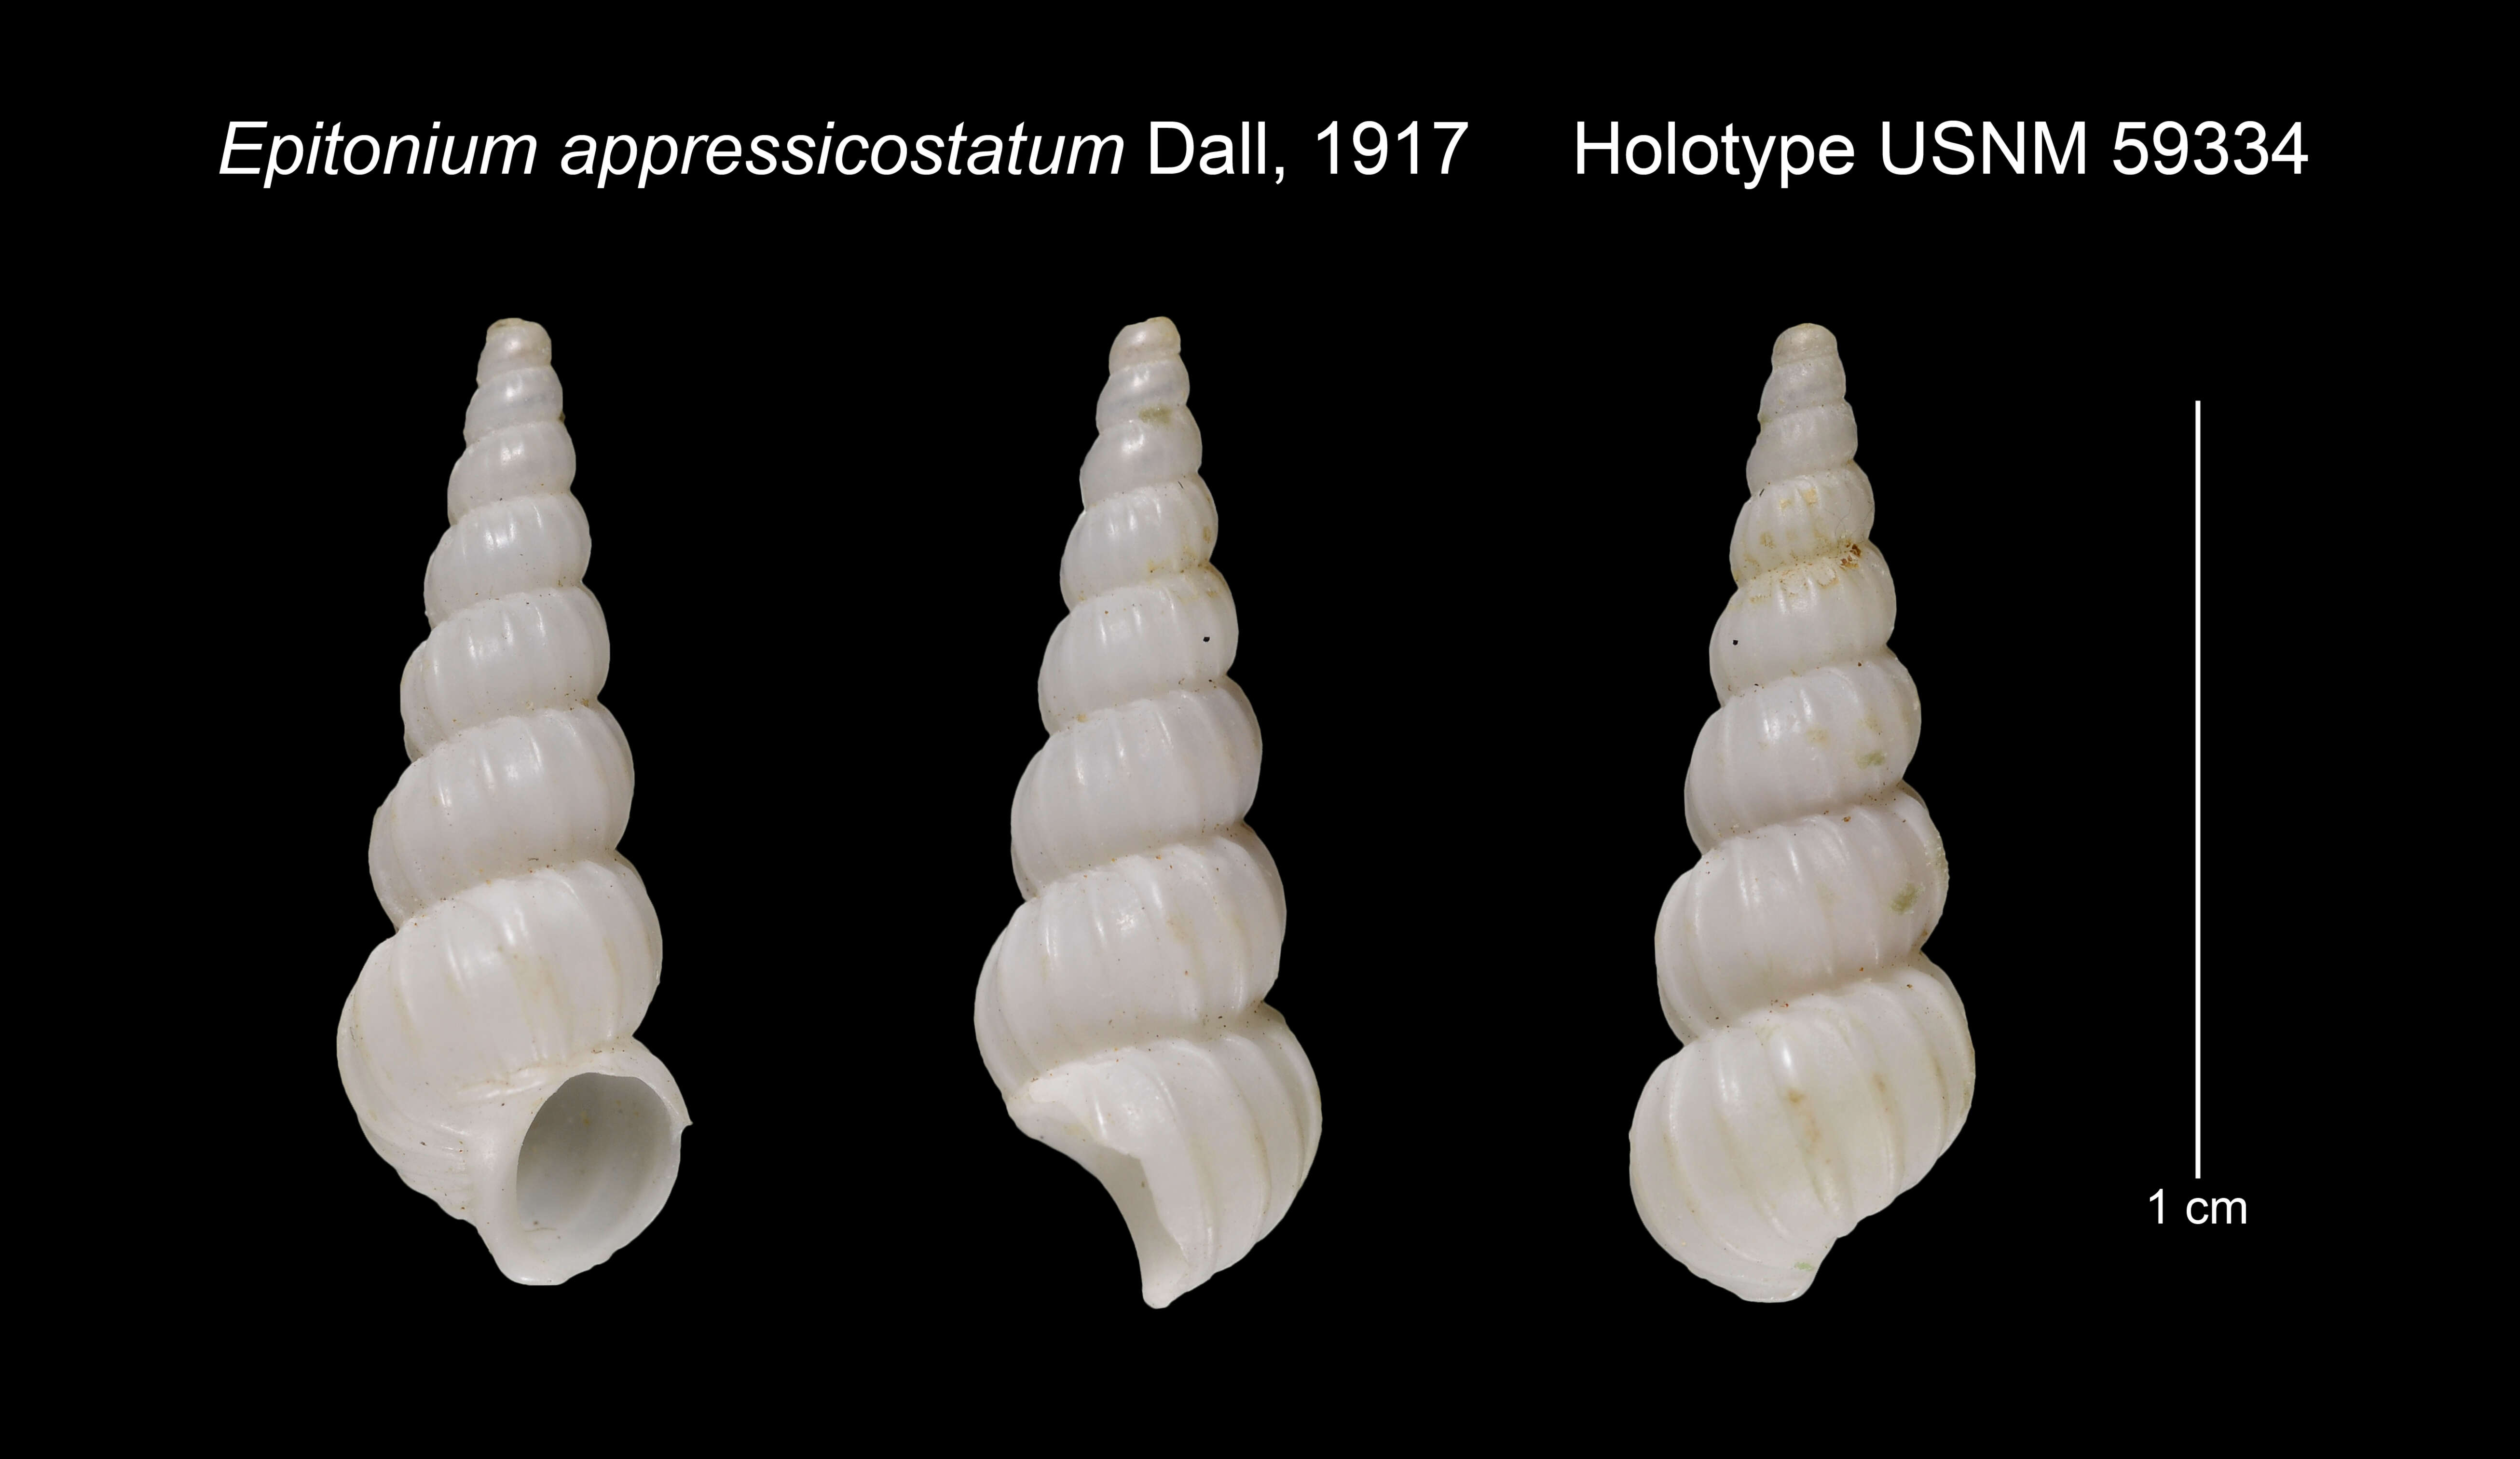 Image of Epitonium appressicostatum Dall 1917